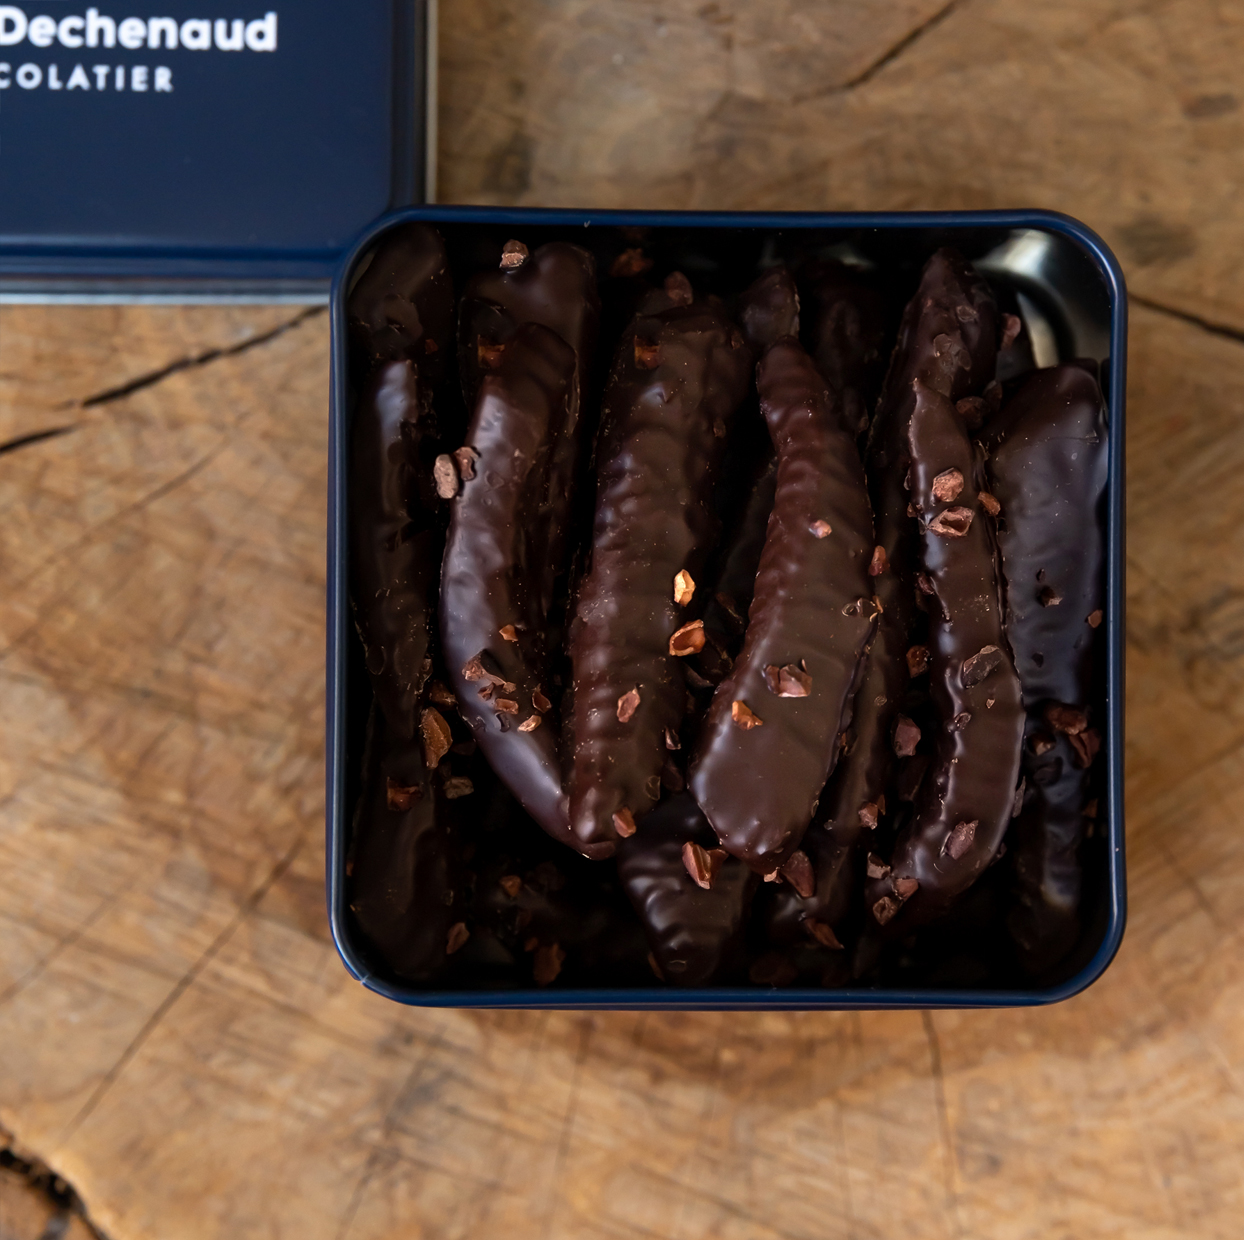 Julien Dechenaud Chocolatier - Boite de chocolats Découverte